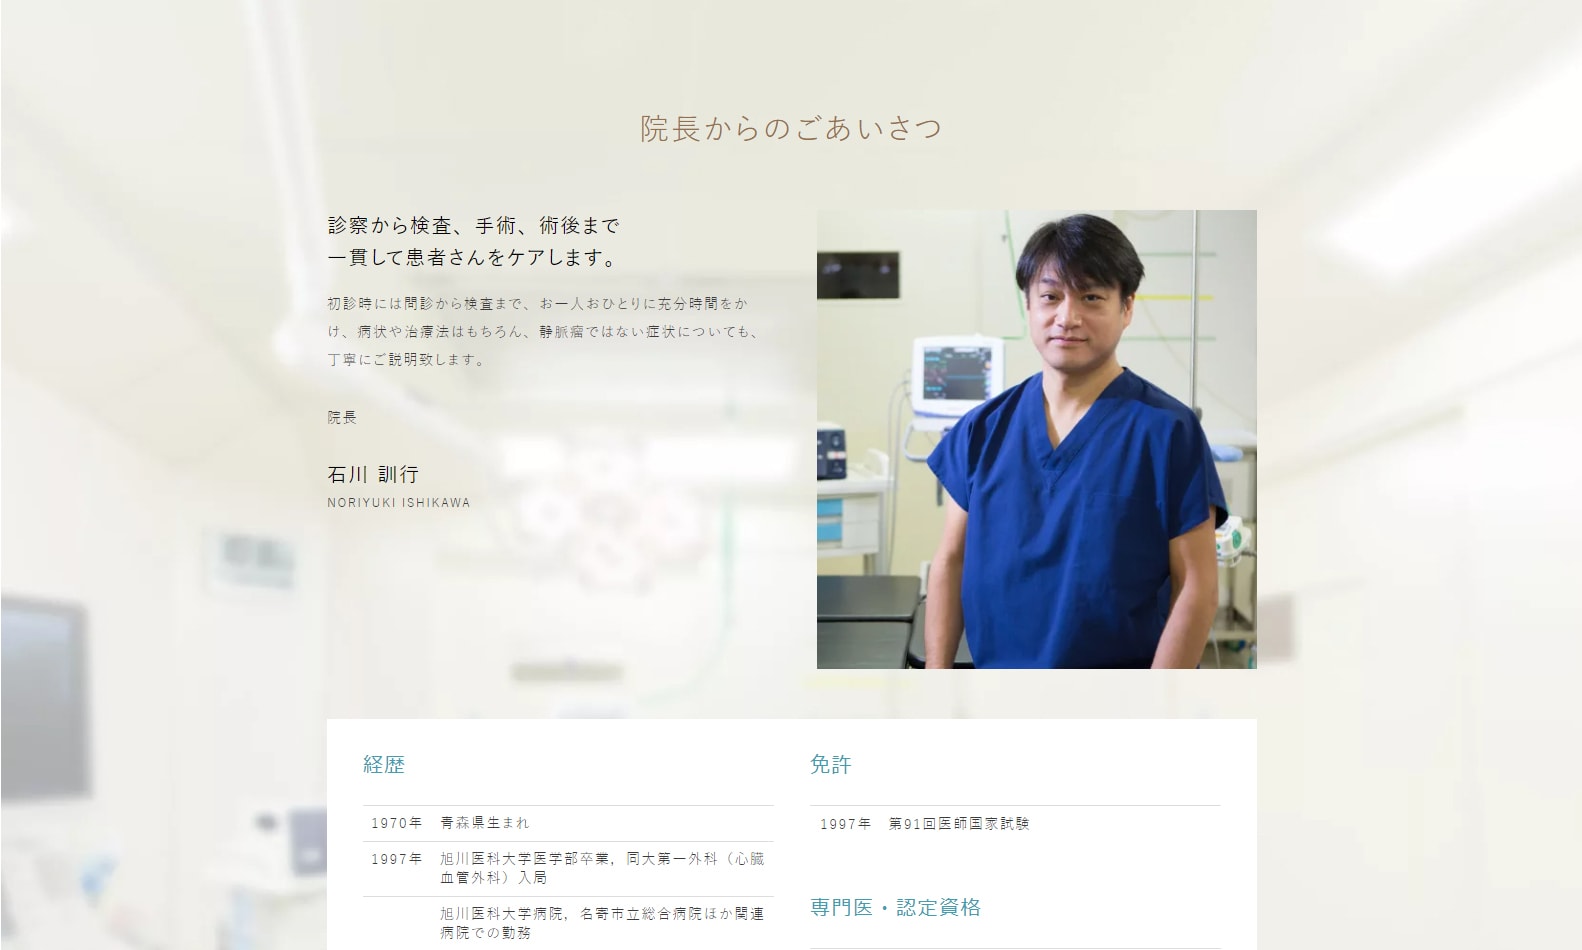 「医療法人札幌静脈瘤クリニック」様サイトのページ画像1